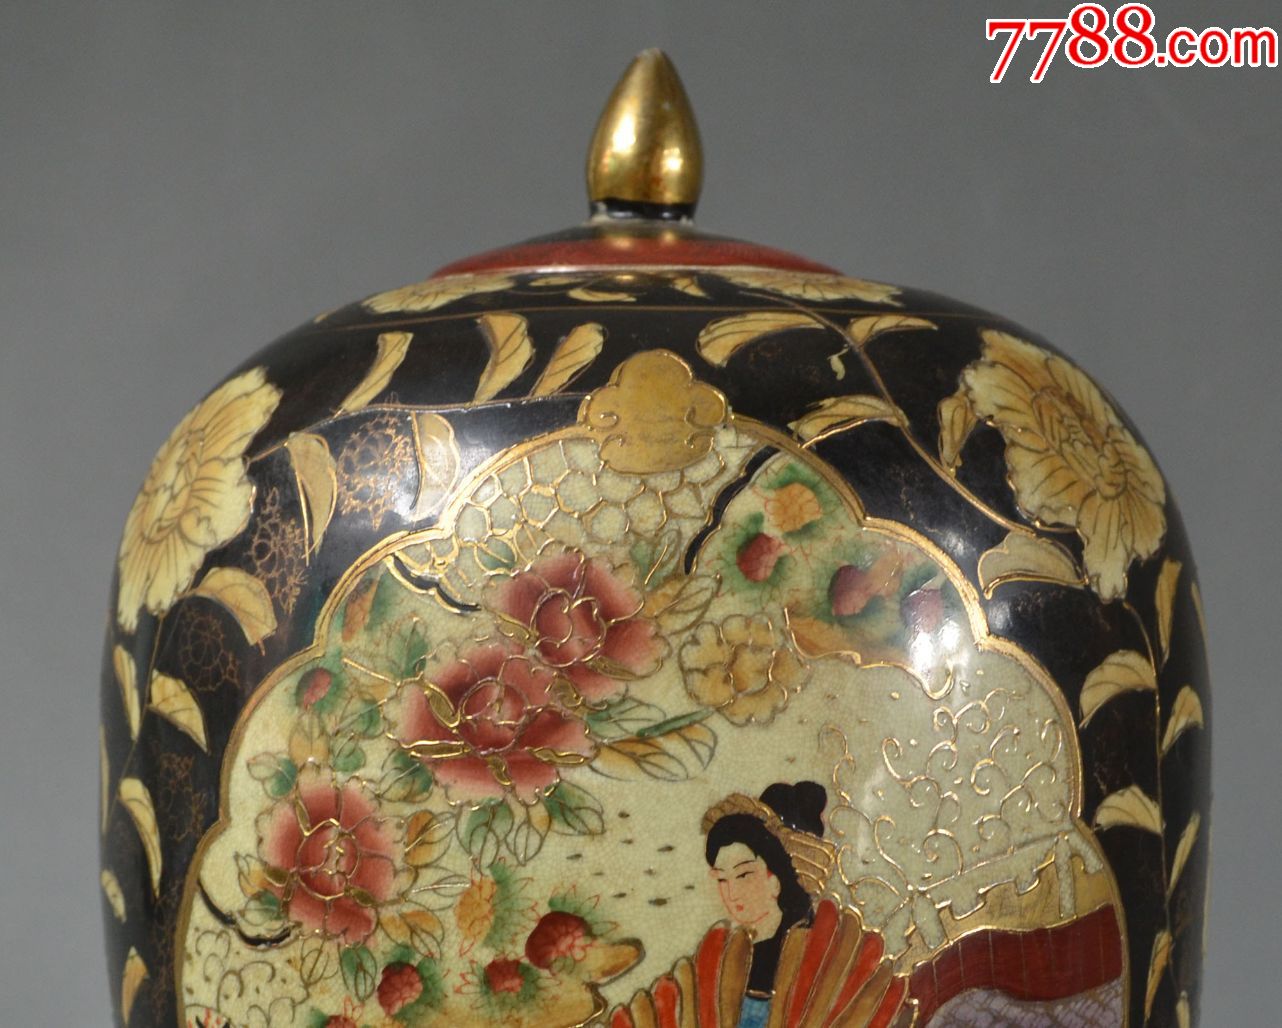 古玩瓷器摆件瓷罐全品日本茶叶罐瓷器编号43_价格4000.